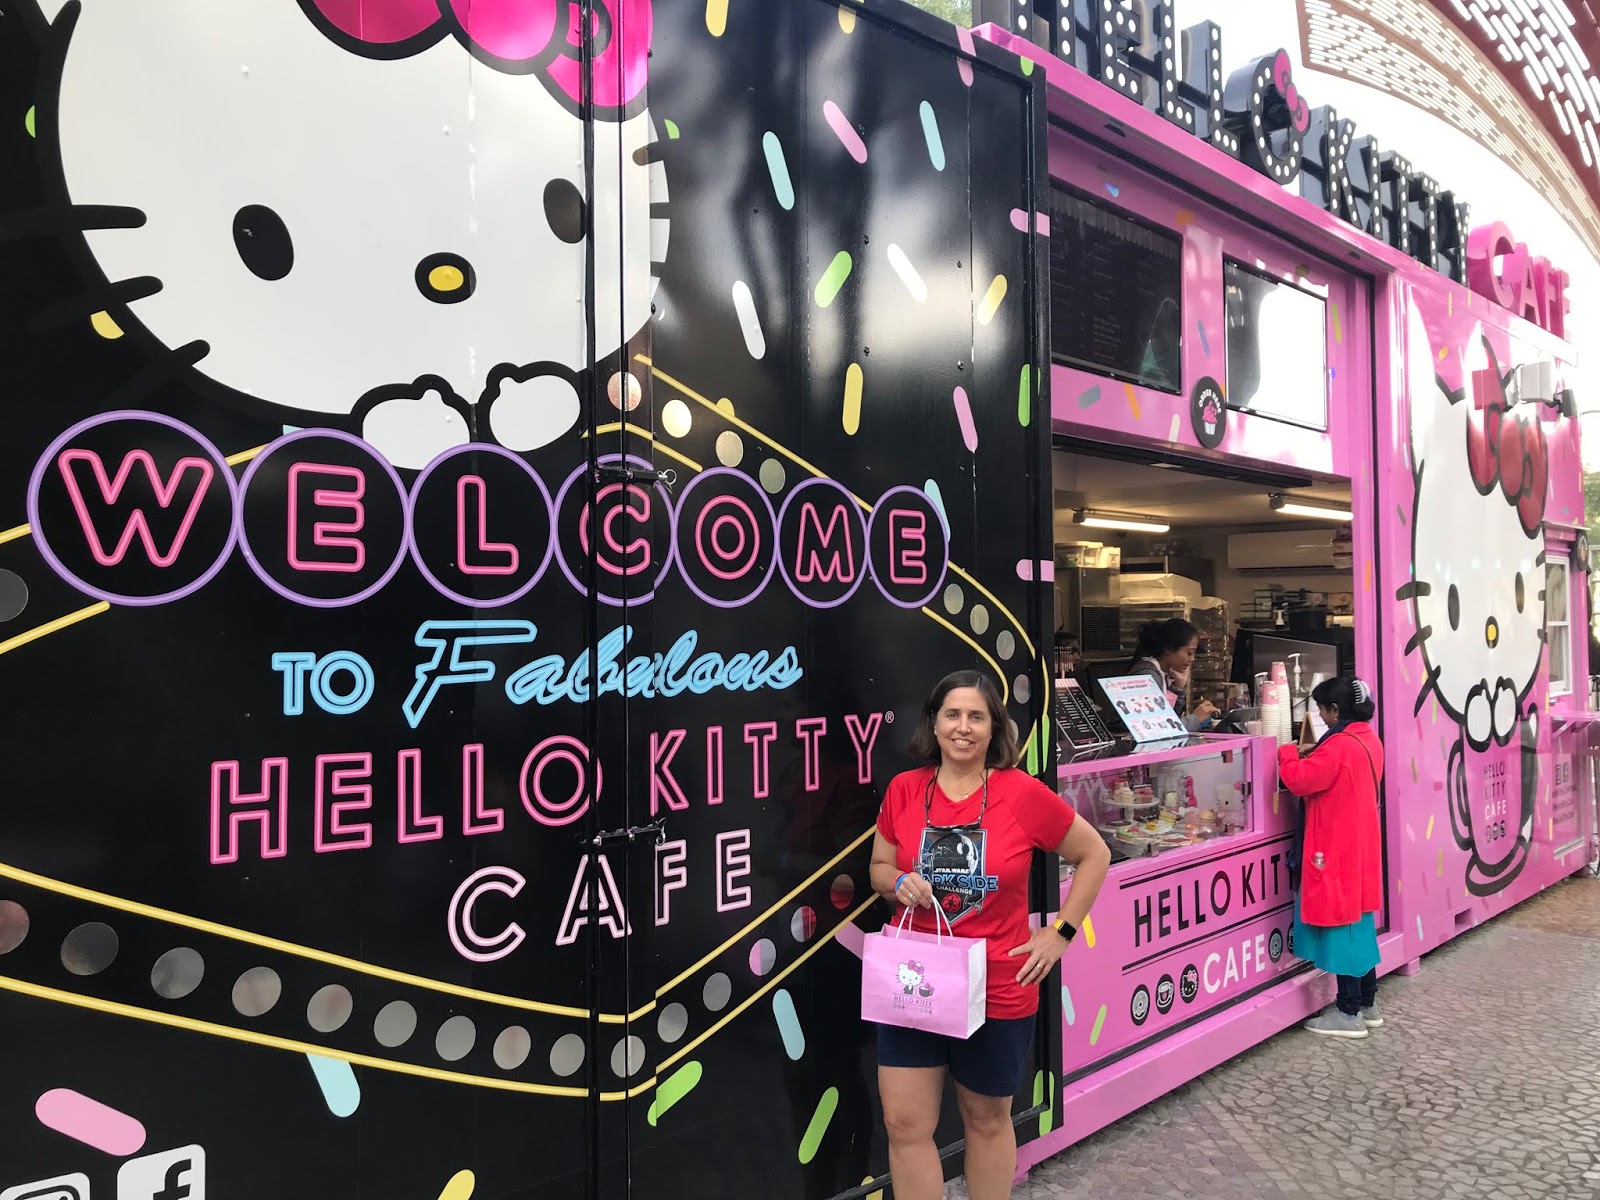 HELLO KITTY CAFE LAS VEGAS - The Strip - Menu, Prices & Restaurant